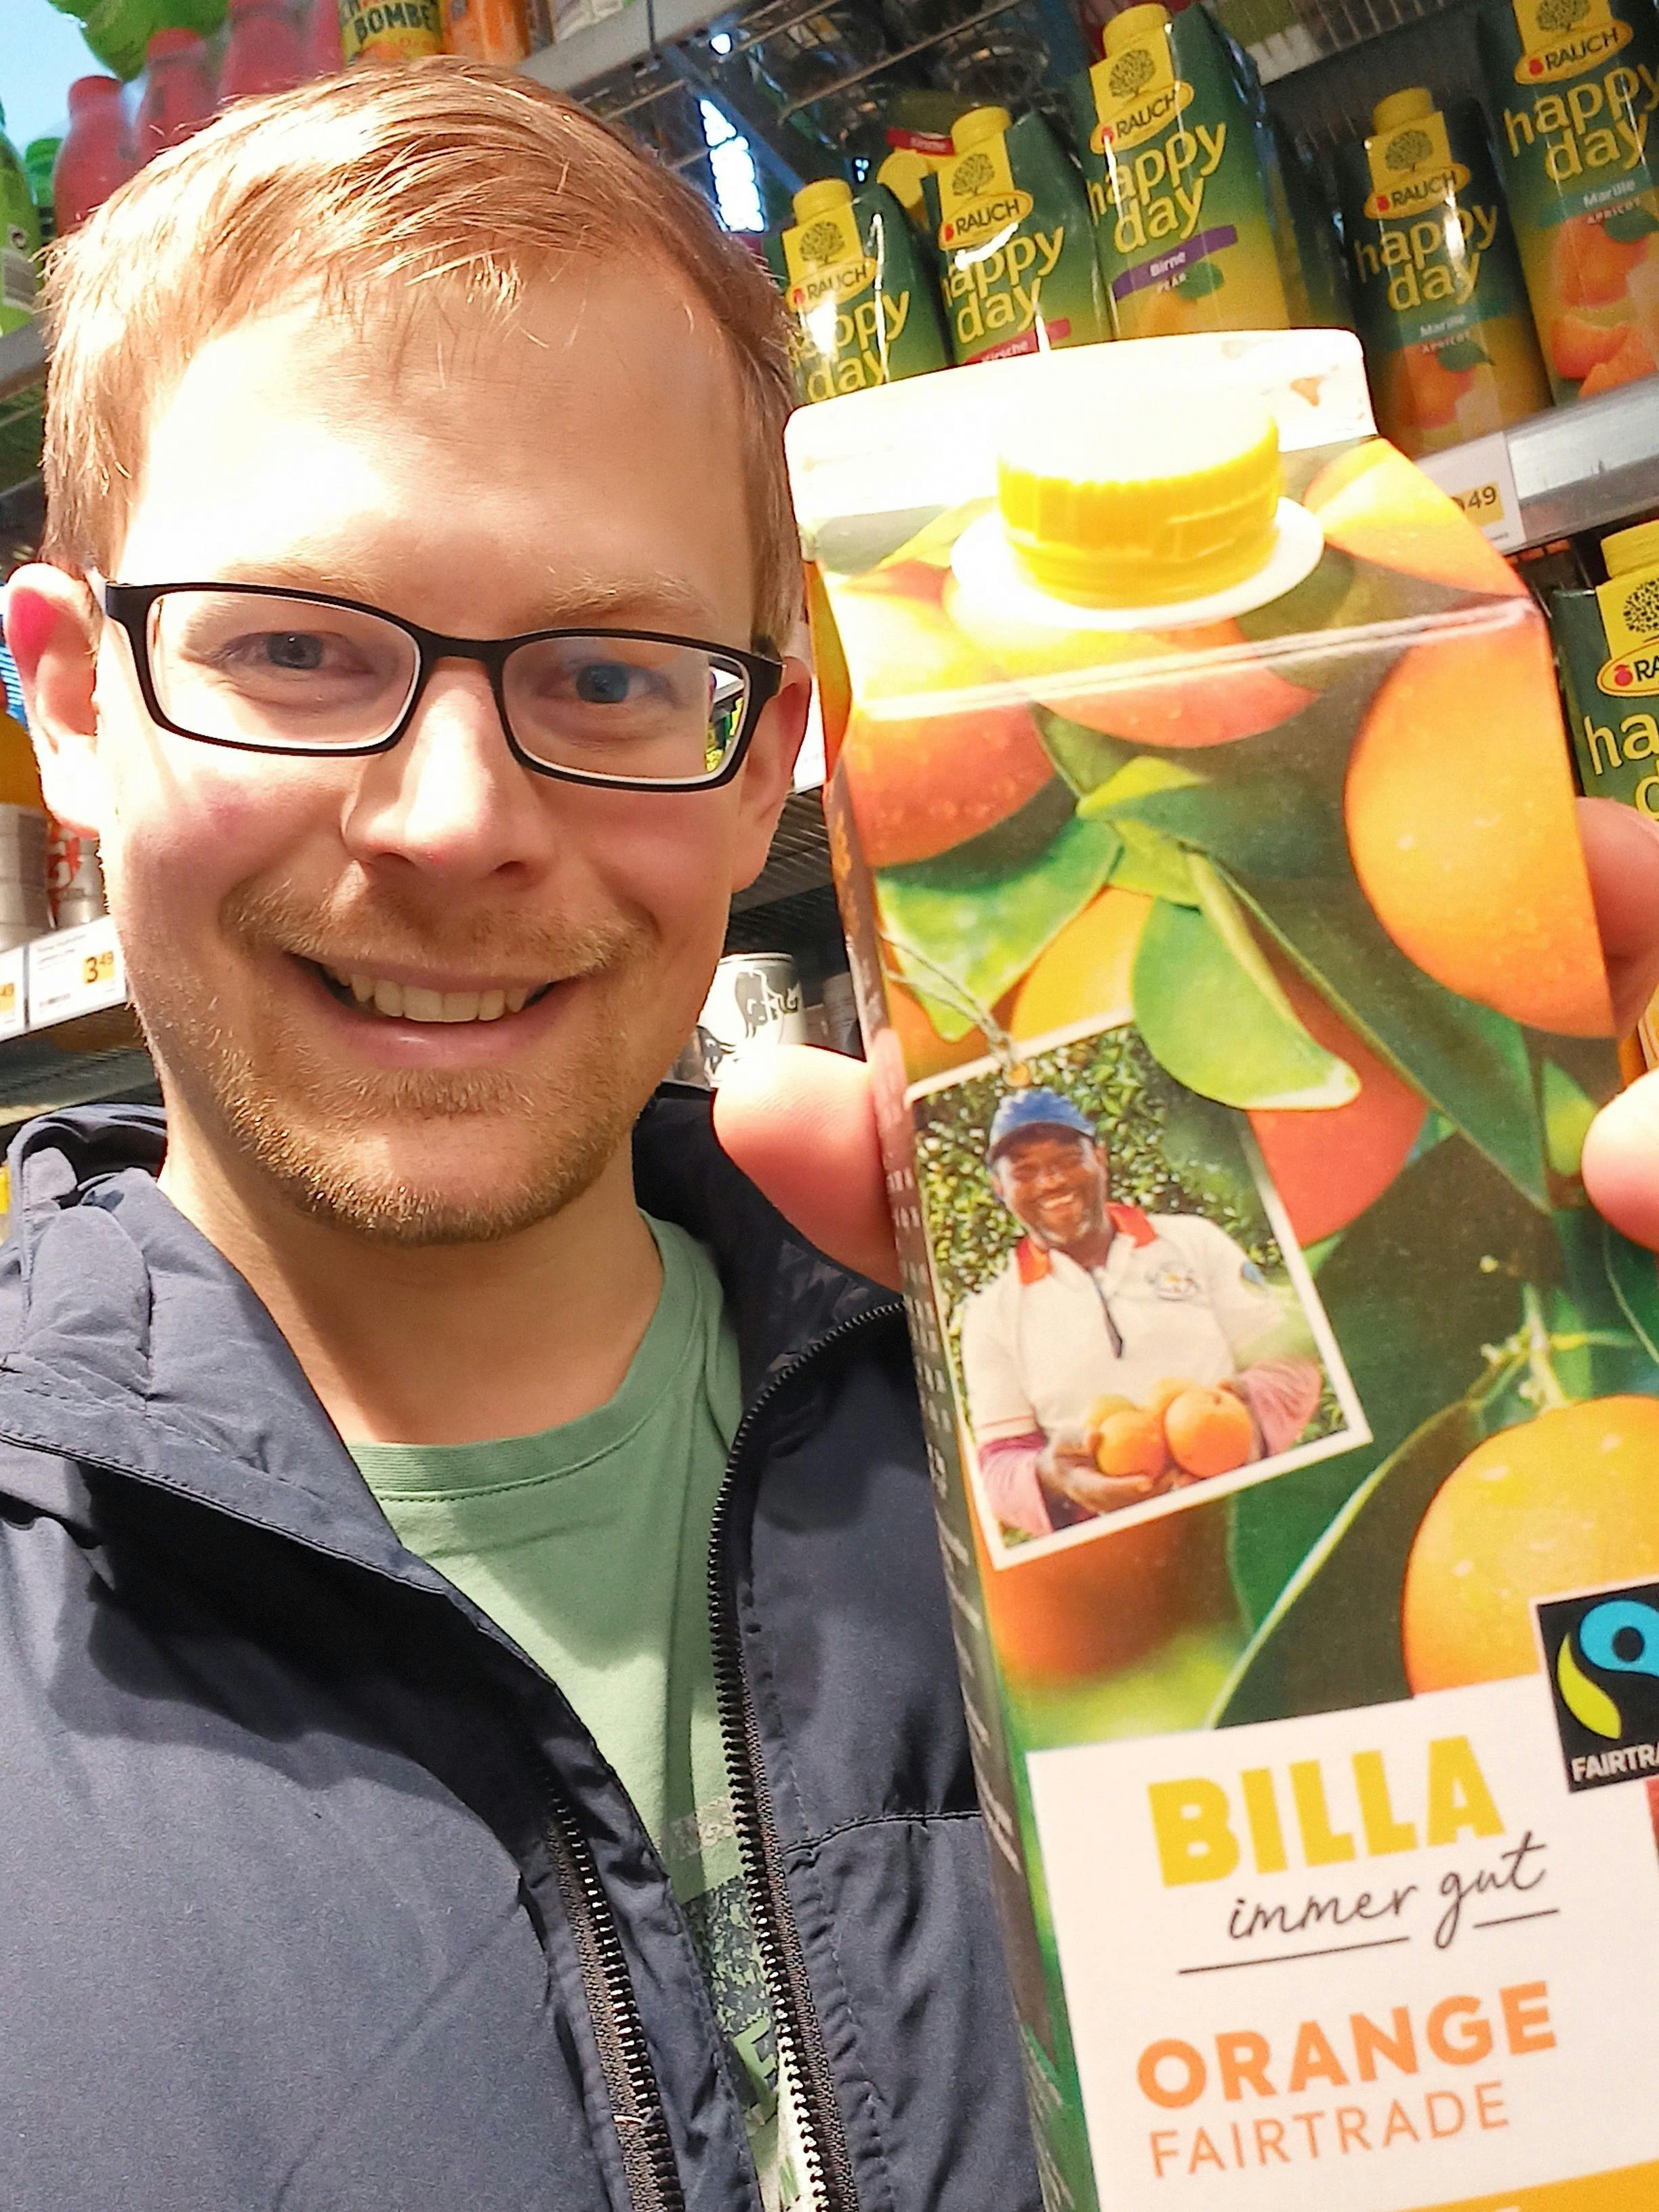 Fairtrade-Orangensaft, um die Landwirte zu unterstützen!